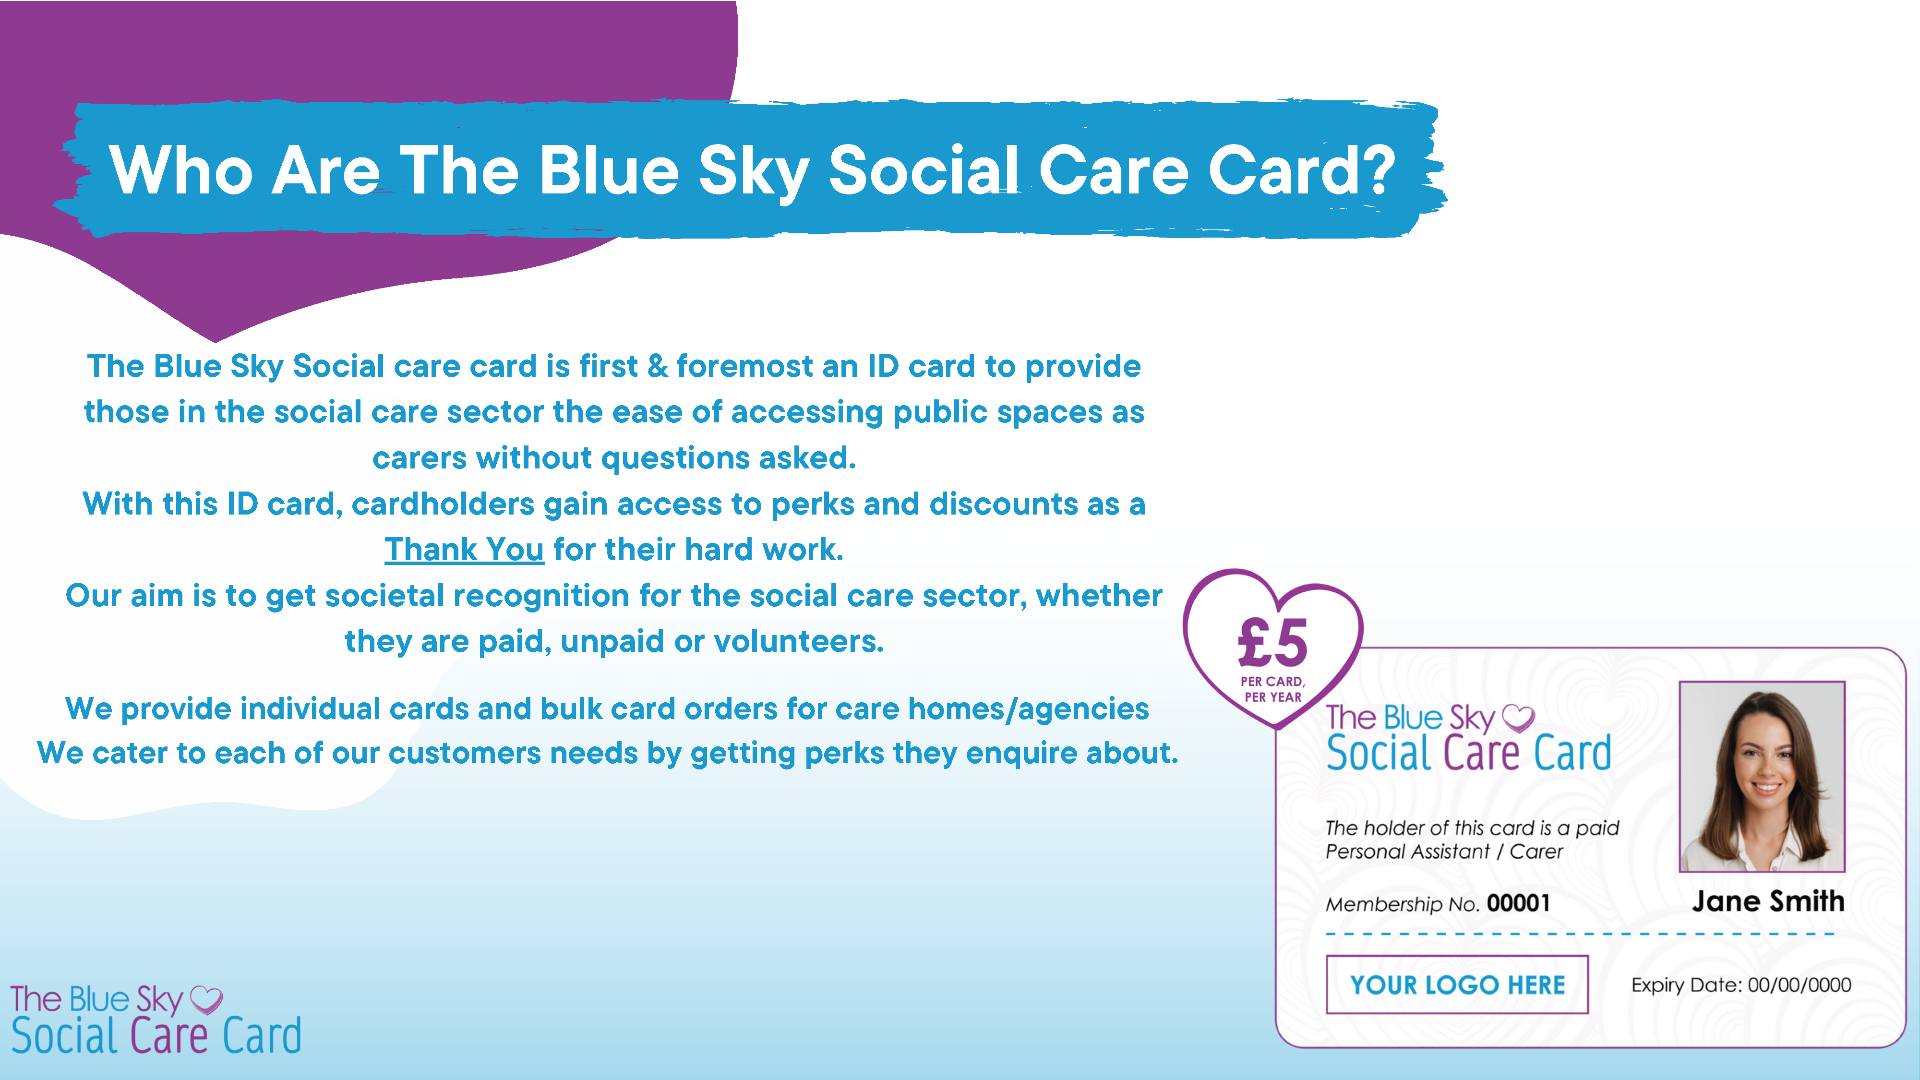 Blue Sky Social Care Card information leaflet - click image for PDF version